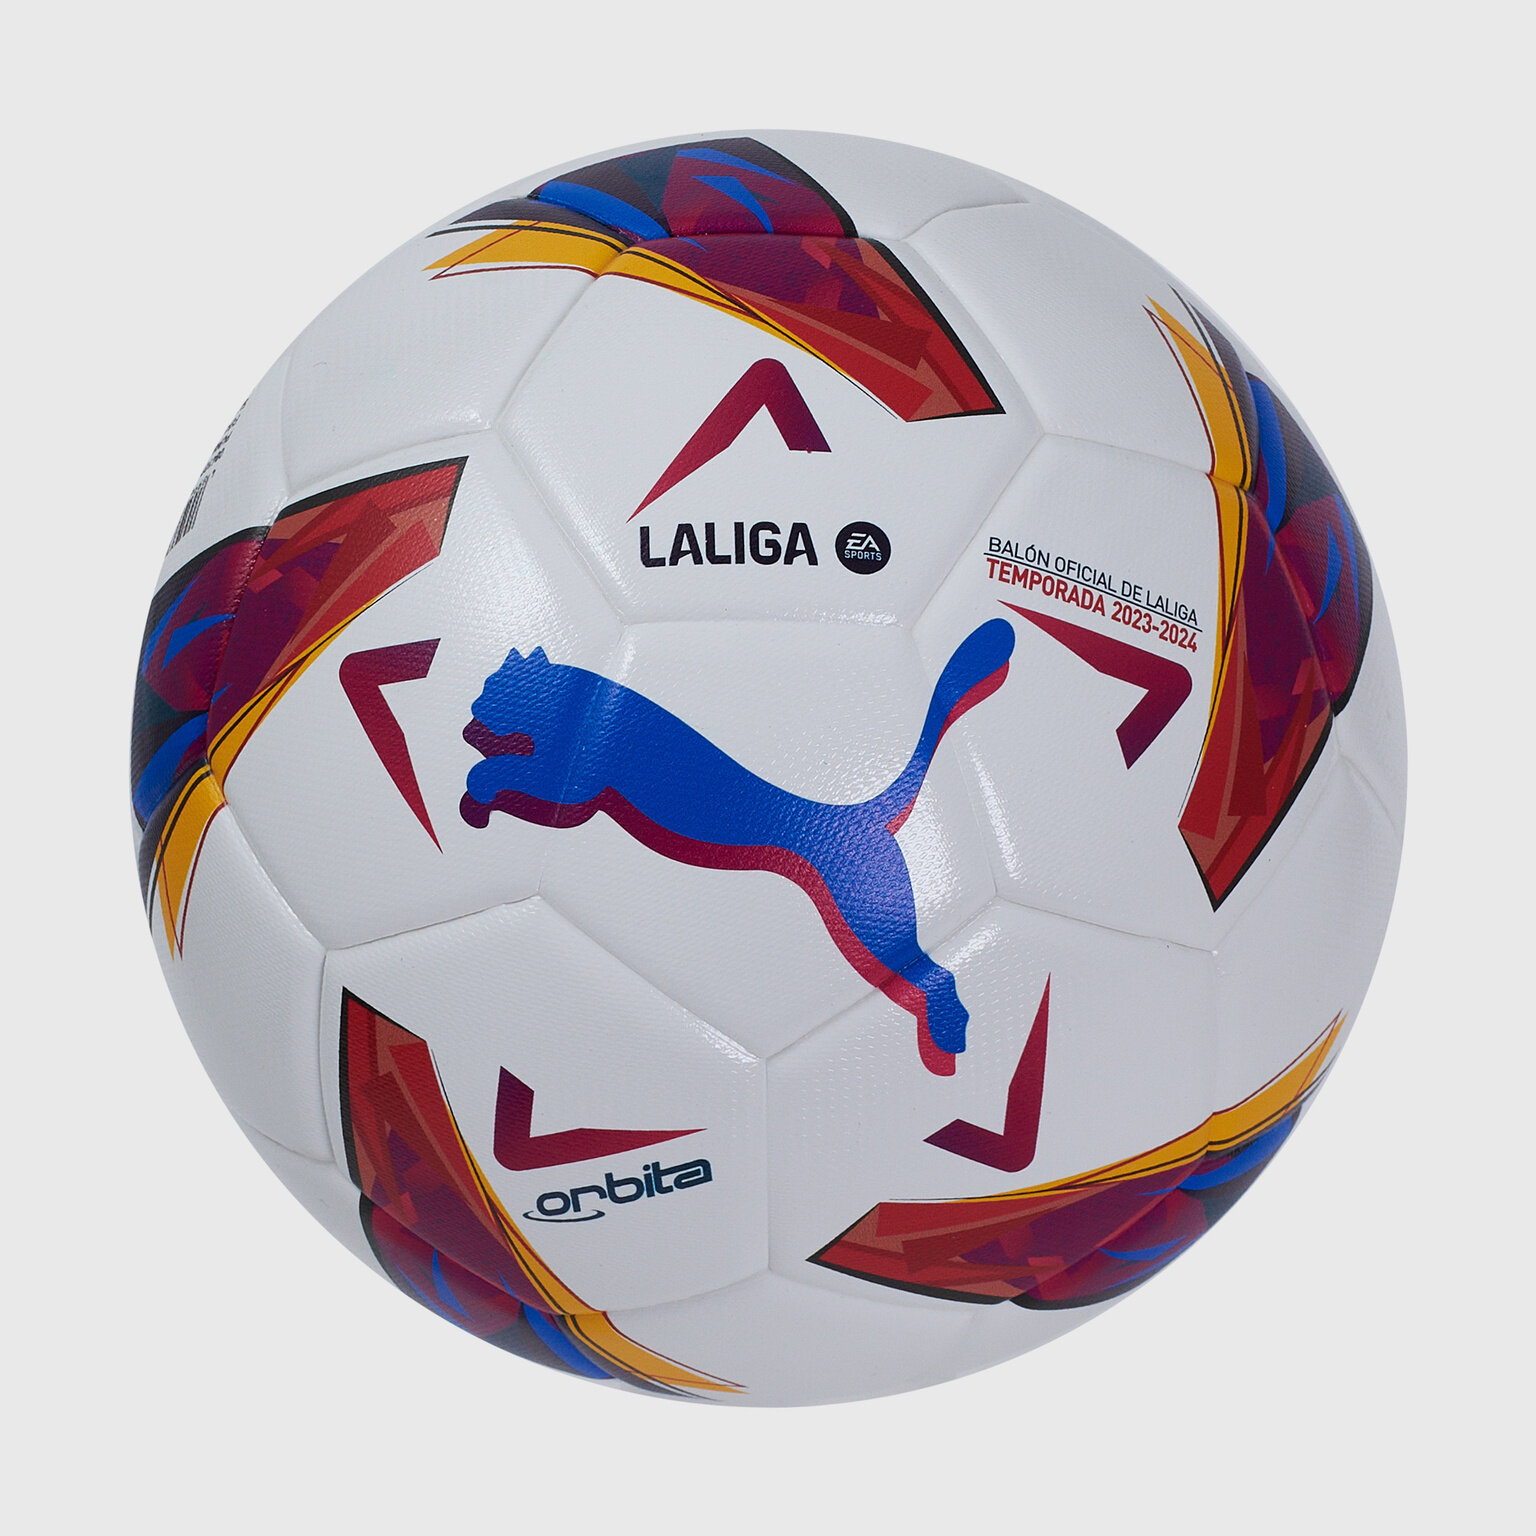 Футбольный мяч Puma Orbita LaLiga 1 FQ 08410701, размер 5, Белый